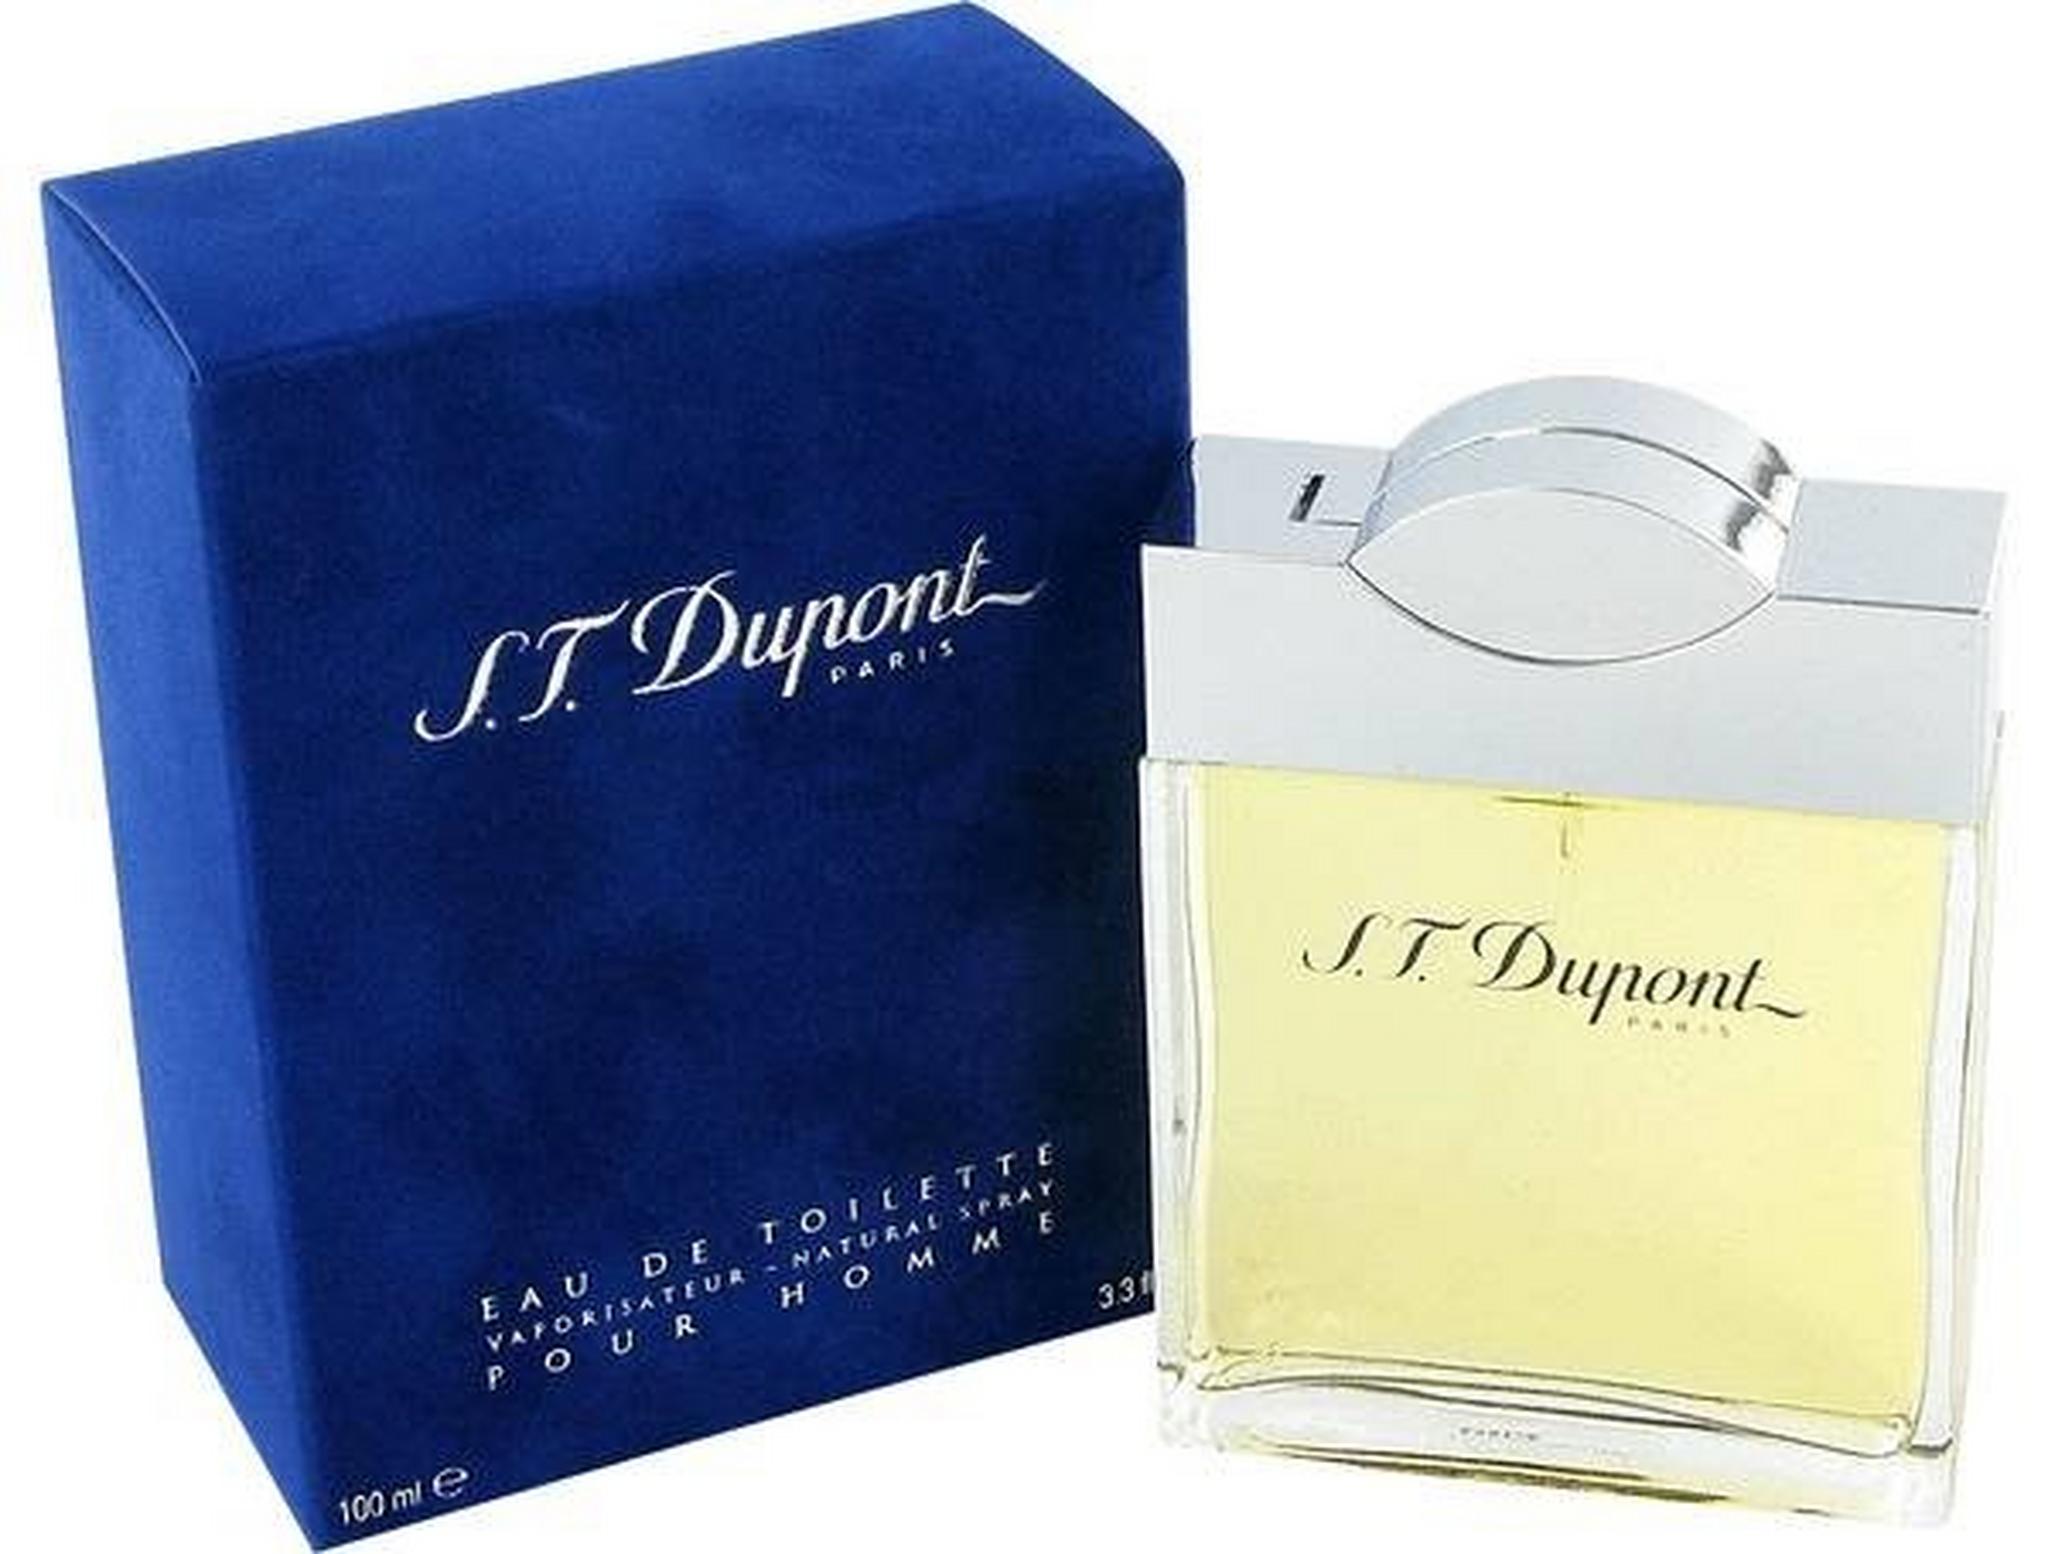 S.T. DUPONT S.T. Dupont - Eau de Toilette 100 ml